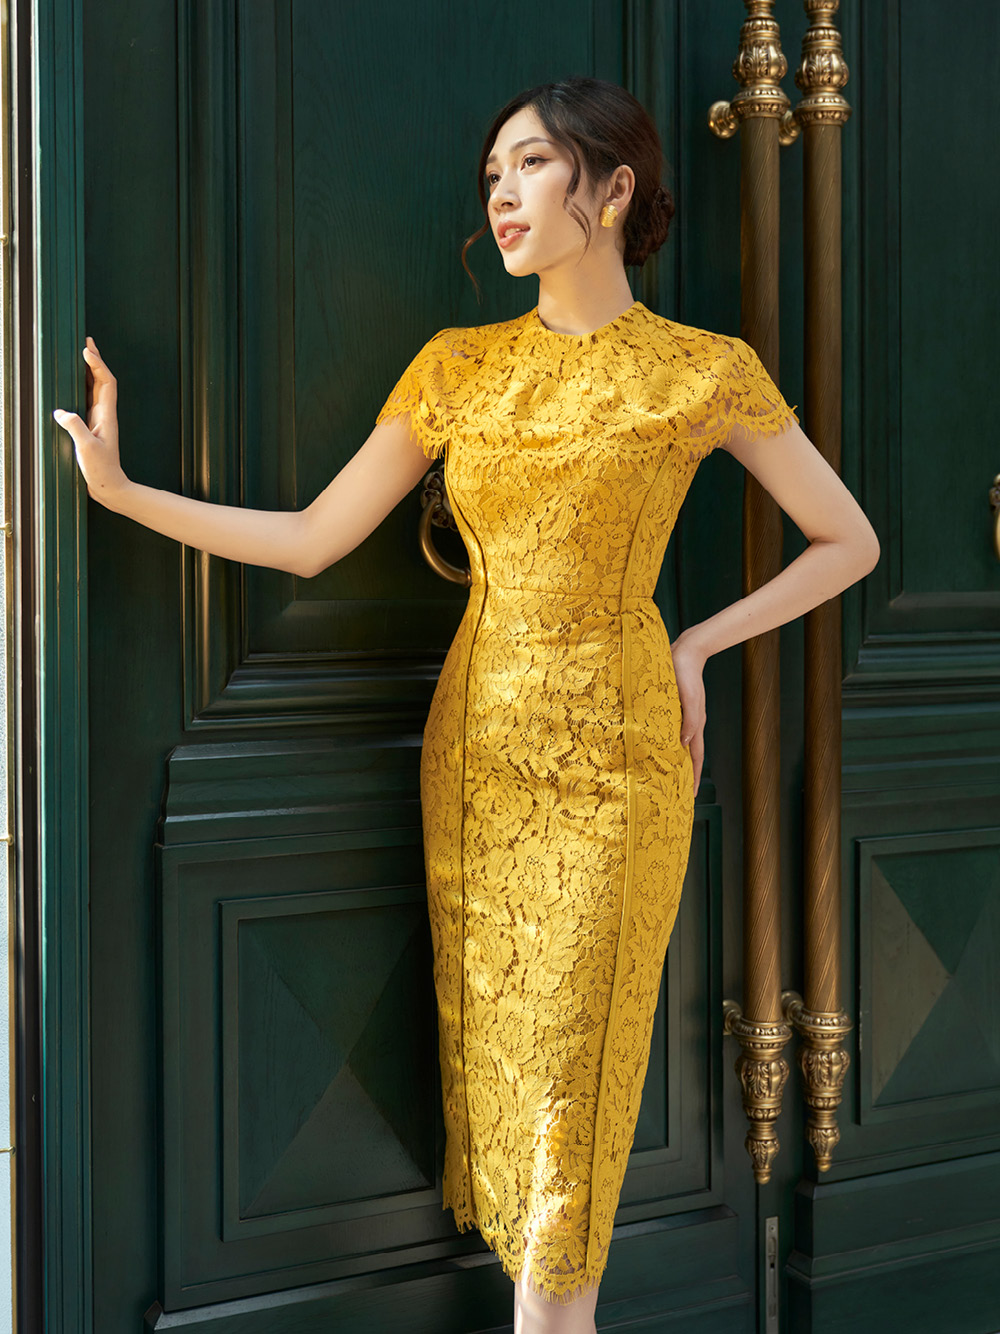 Đầm Lace vàng